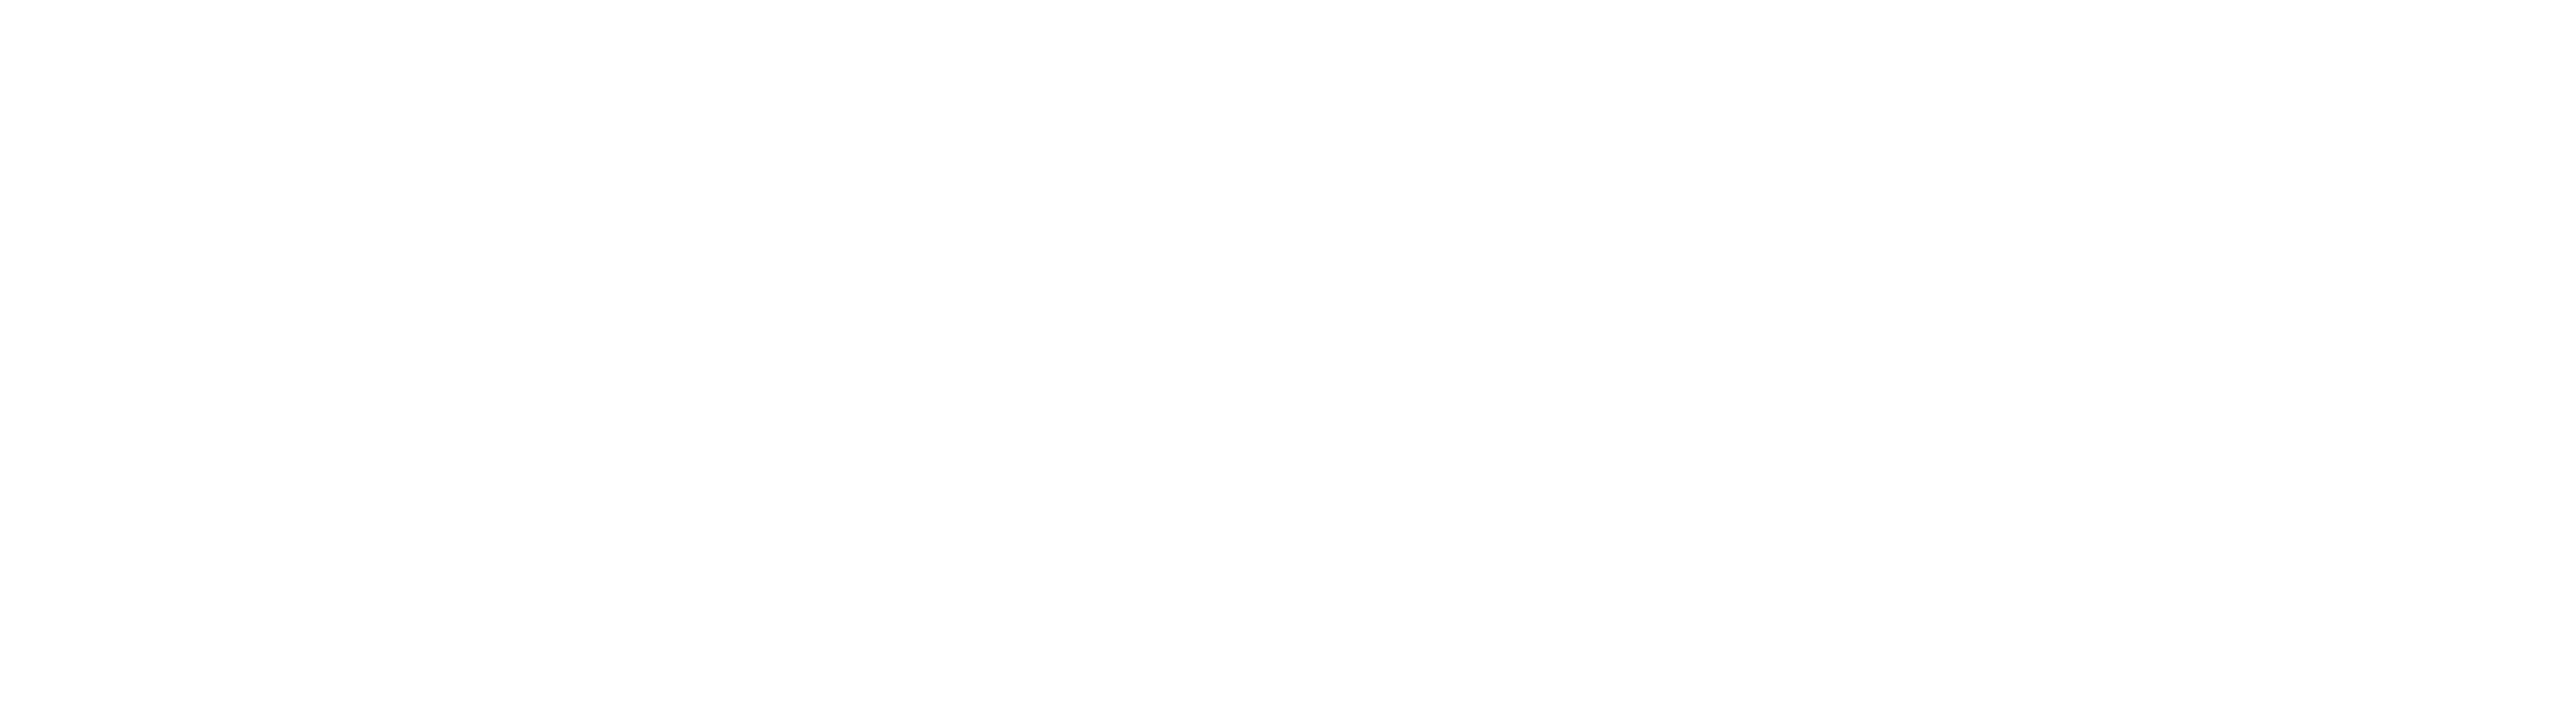 1700 Pavilion